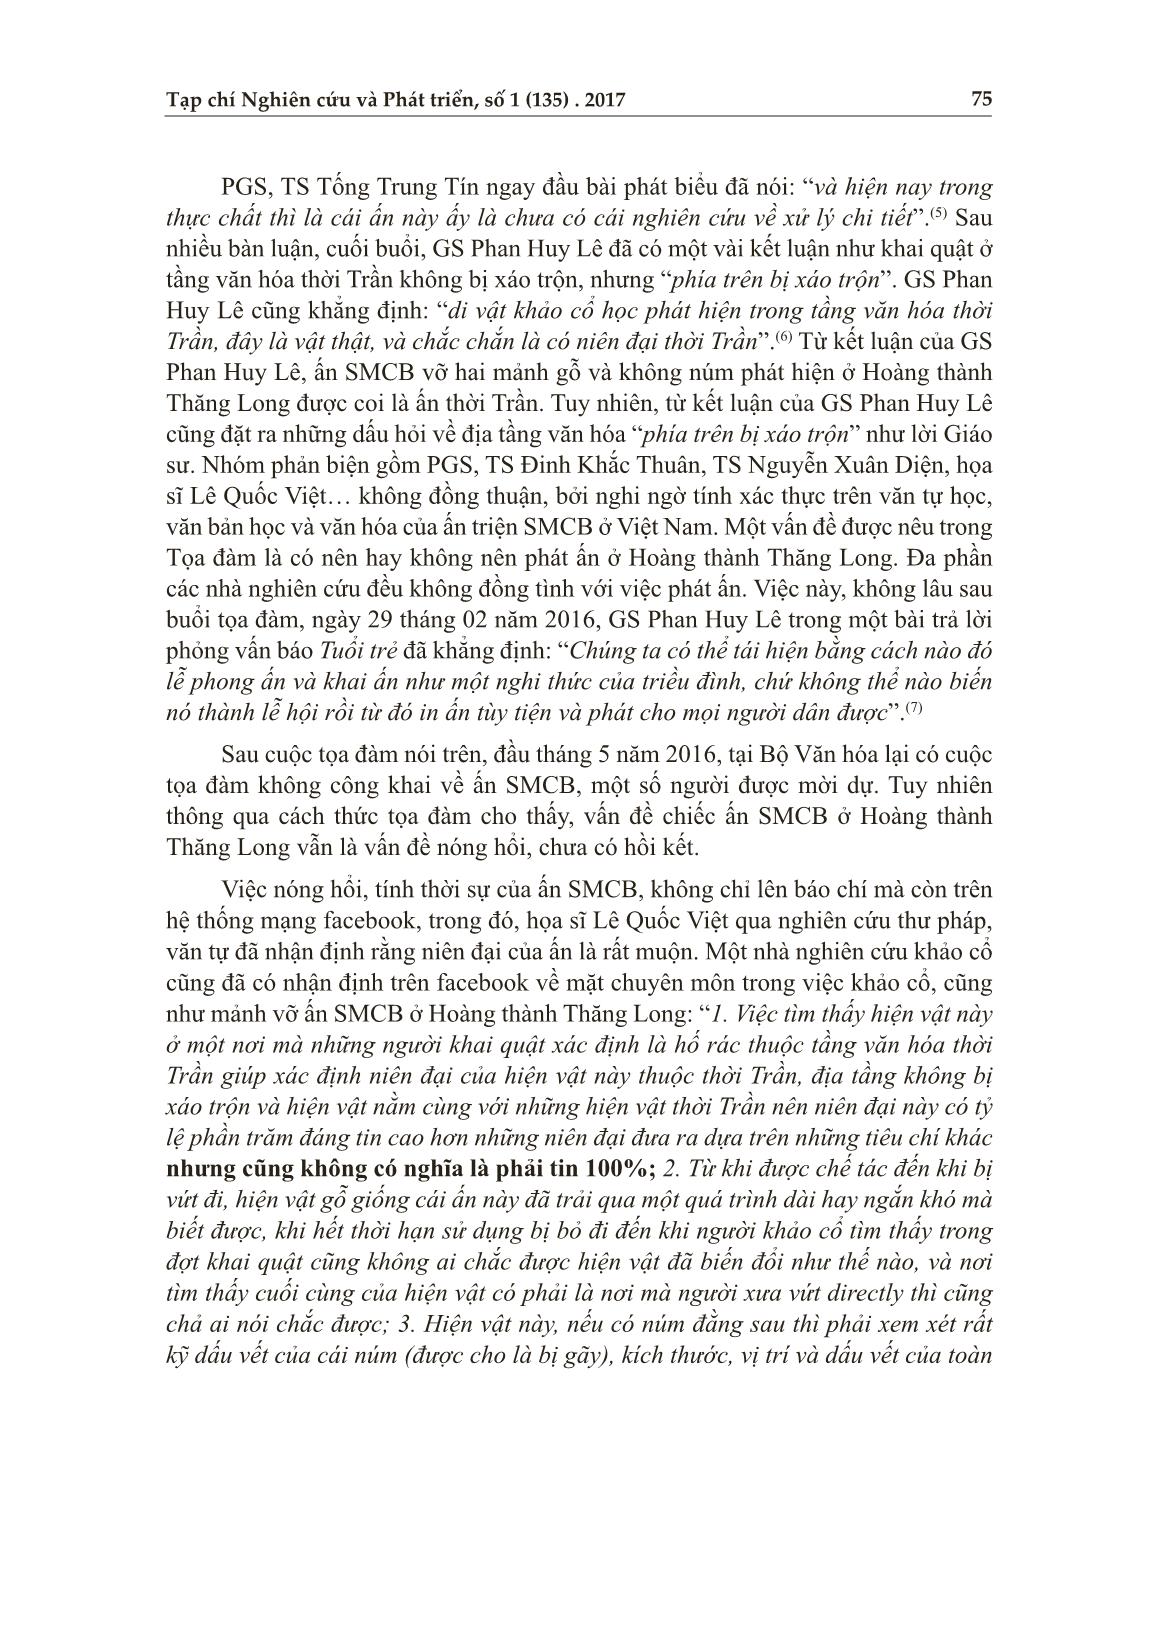 Ấn “sắc mệnh chi bảo” ở Hoàng thành Thăng Long và trào lưu phát ấn đương đại trang 2